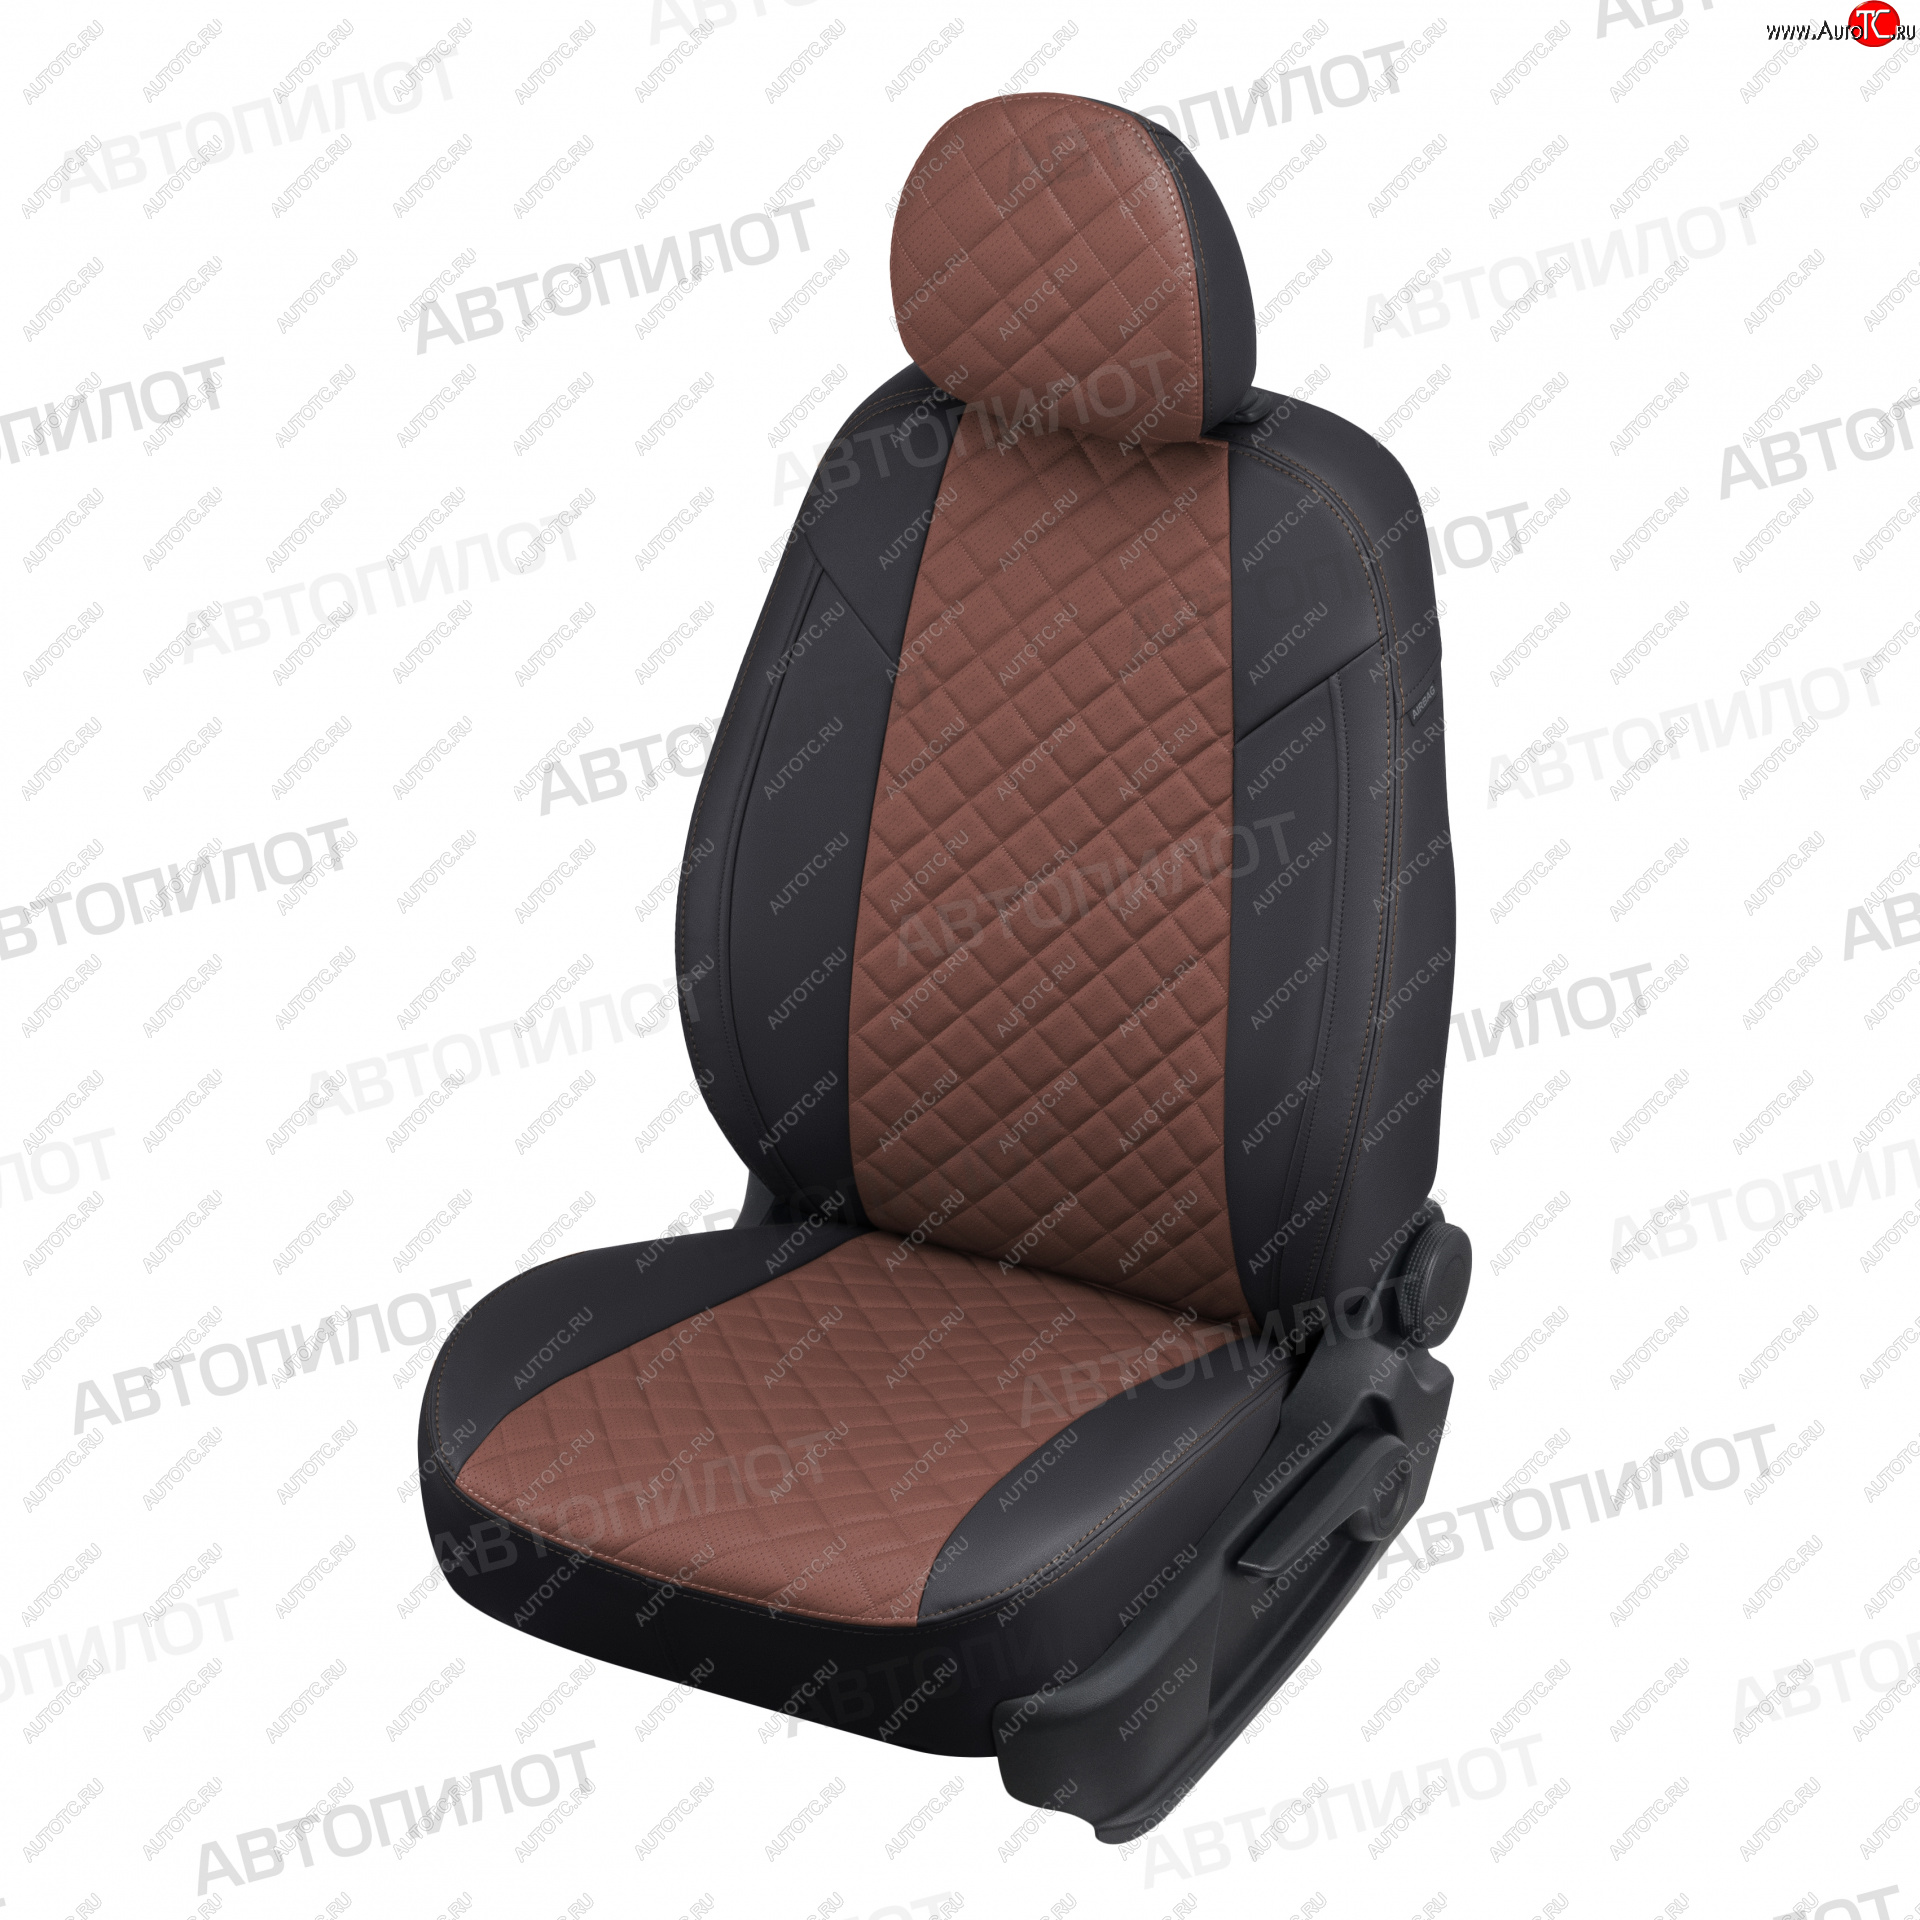 14 499 р. Чехлы сидений (Titanium, экокожа) Автопилот Ромб  Ford Mondeo (2007-2014) (черный/темно-коричневый)